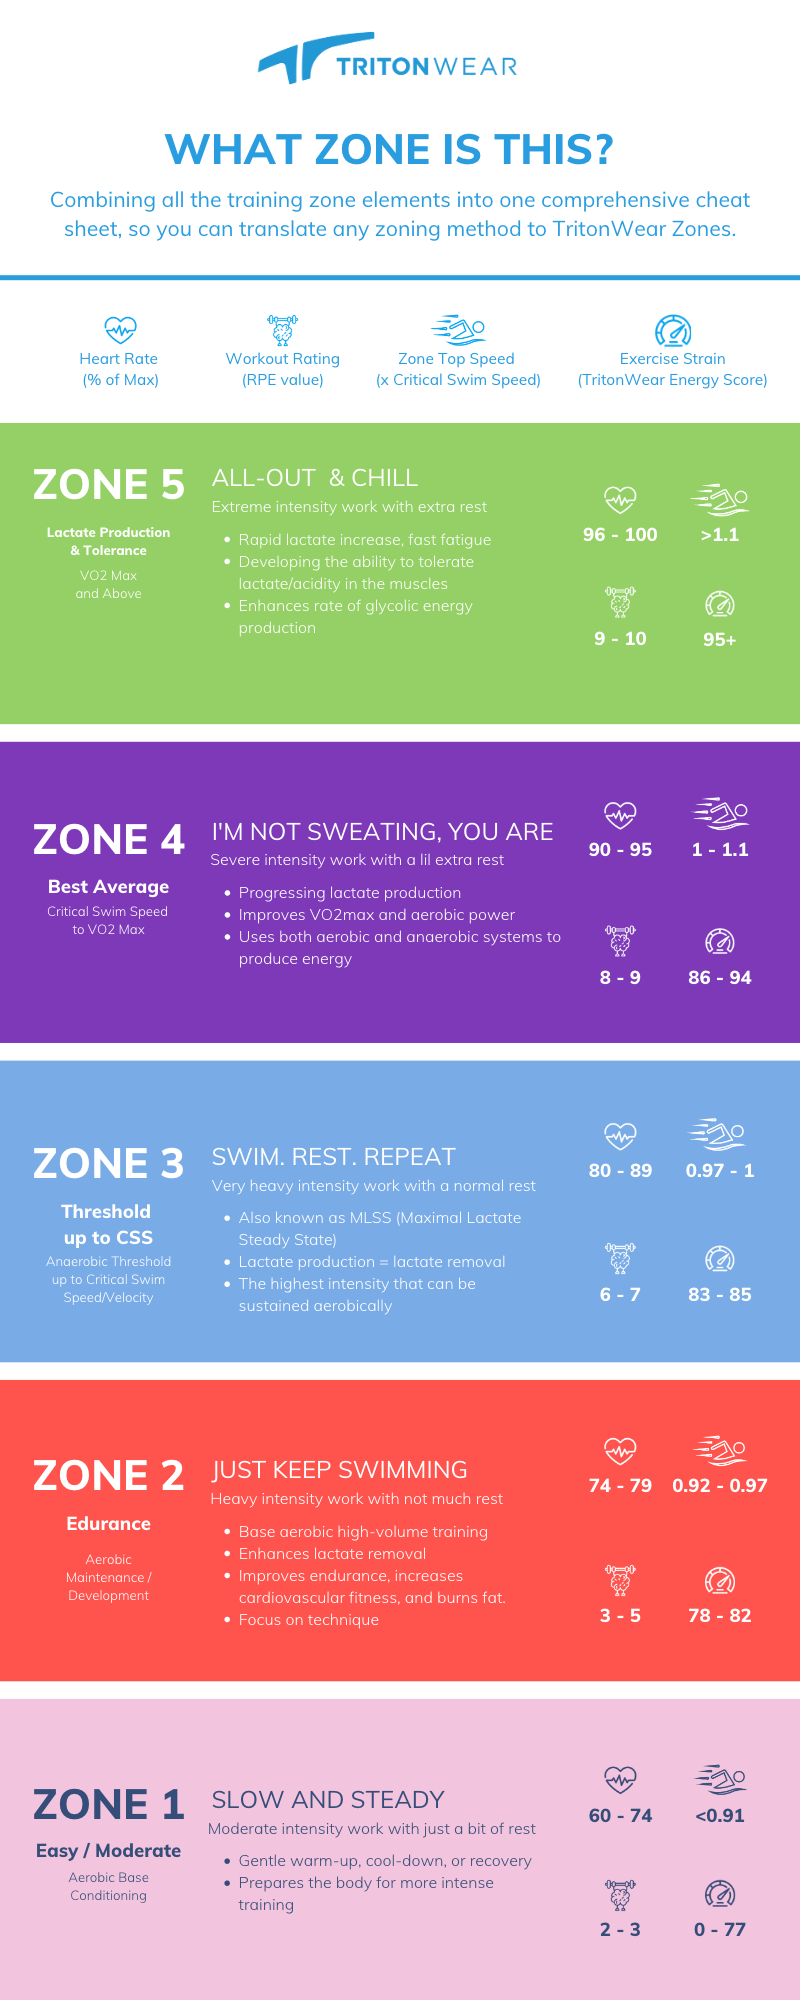 Zone 1 (Infographic)